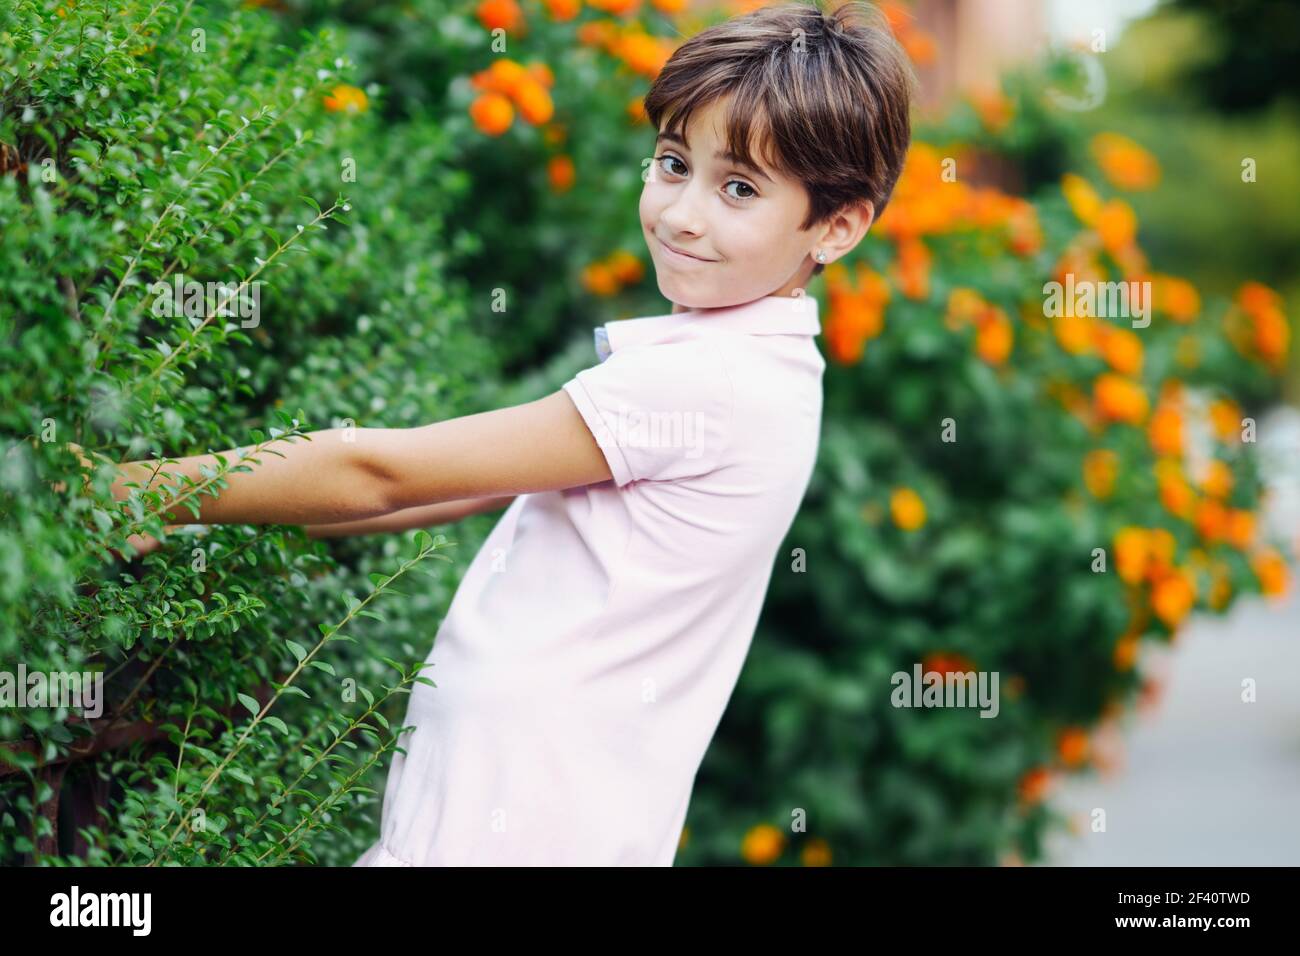 Bambina con capelli molto corti, divertirsi in un parco urbano con vestito rosa. Bambina, otto anni, che si diverte in un parco urbano. Foto Stock